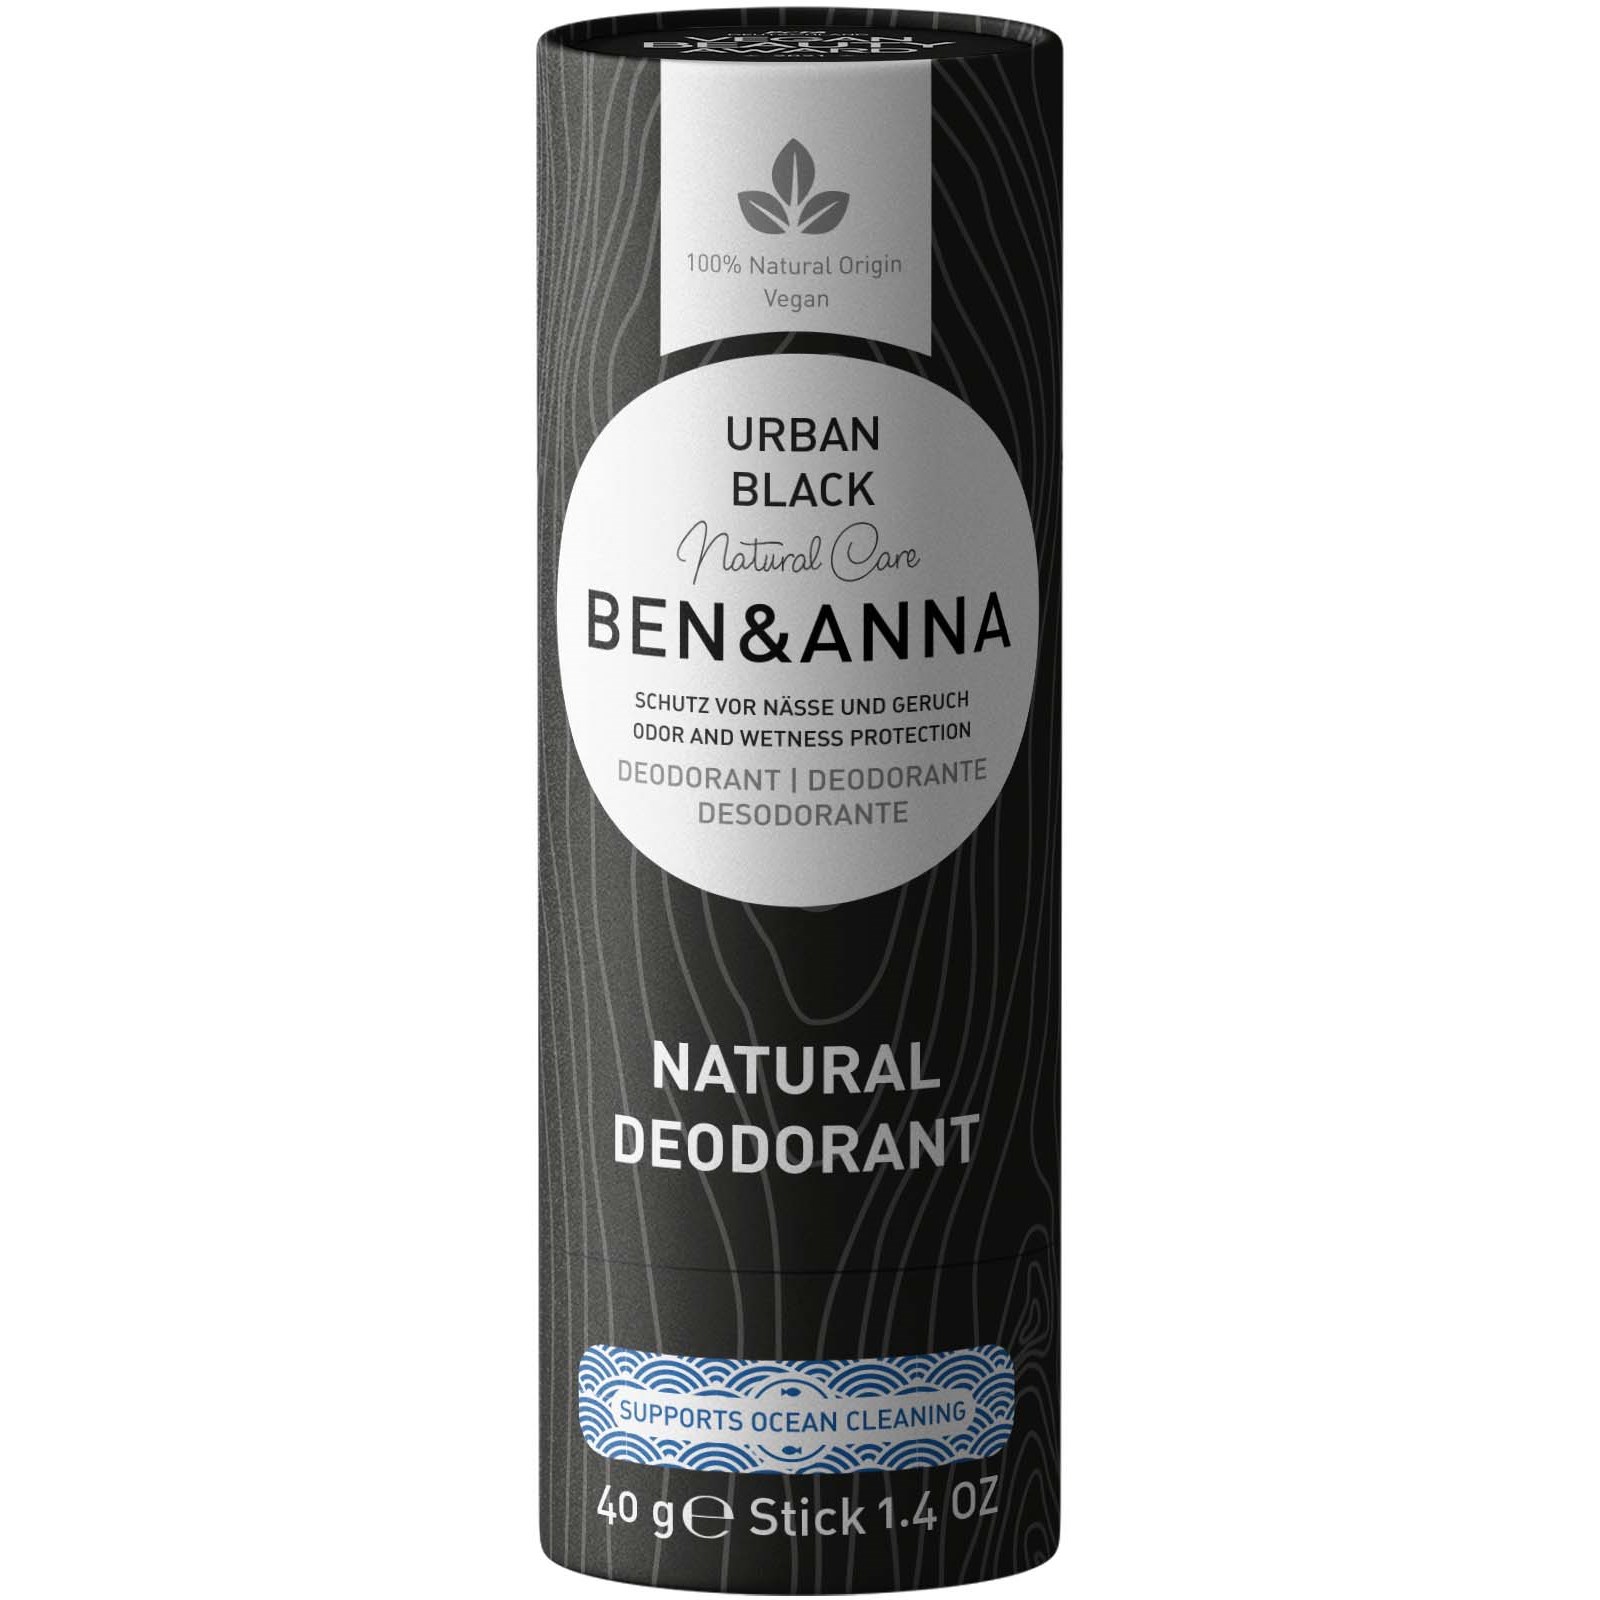 Läs mer om Ben & Anna Deodorant Urban Black 40 g